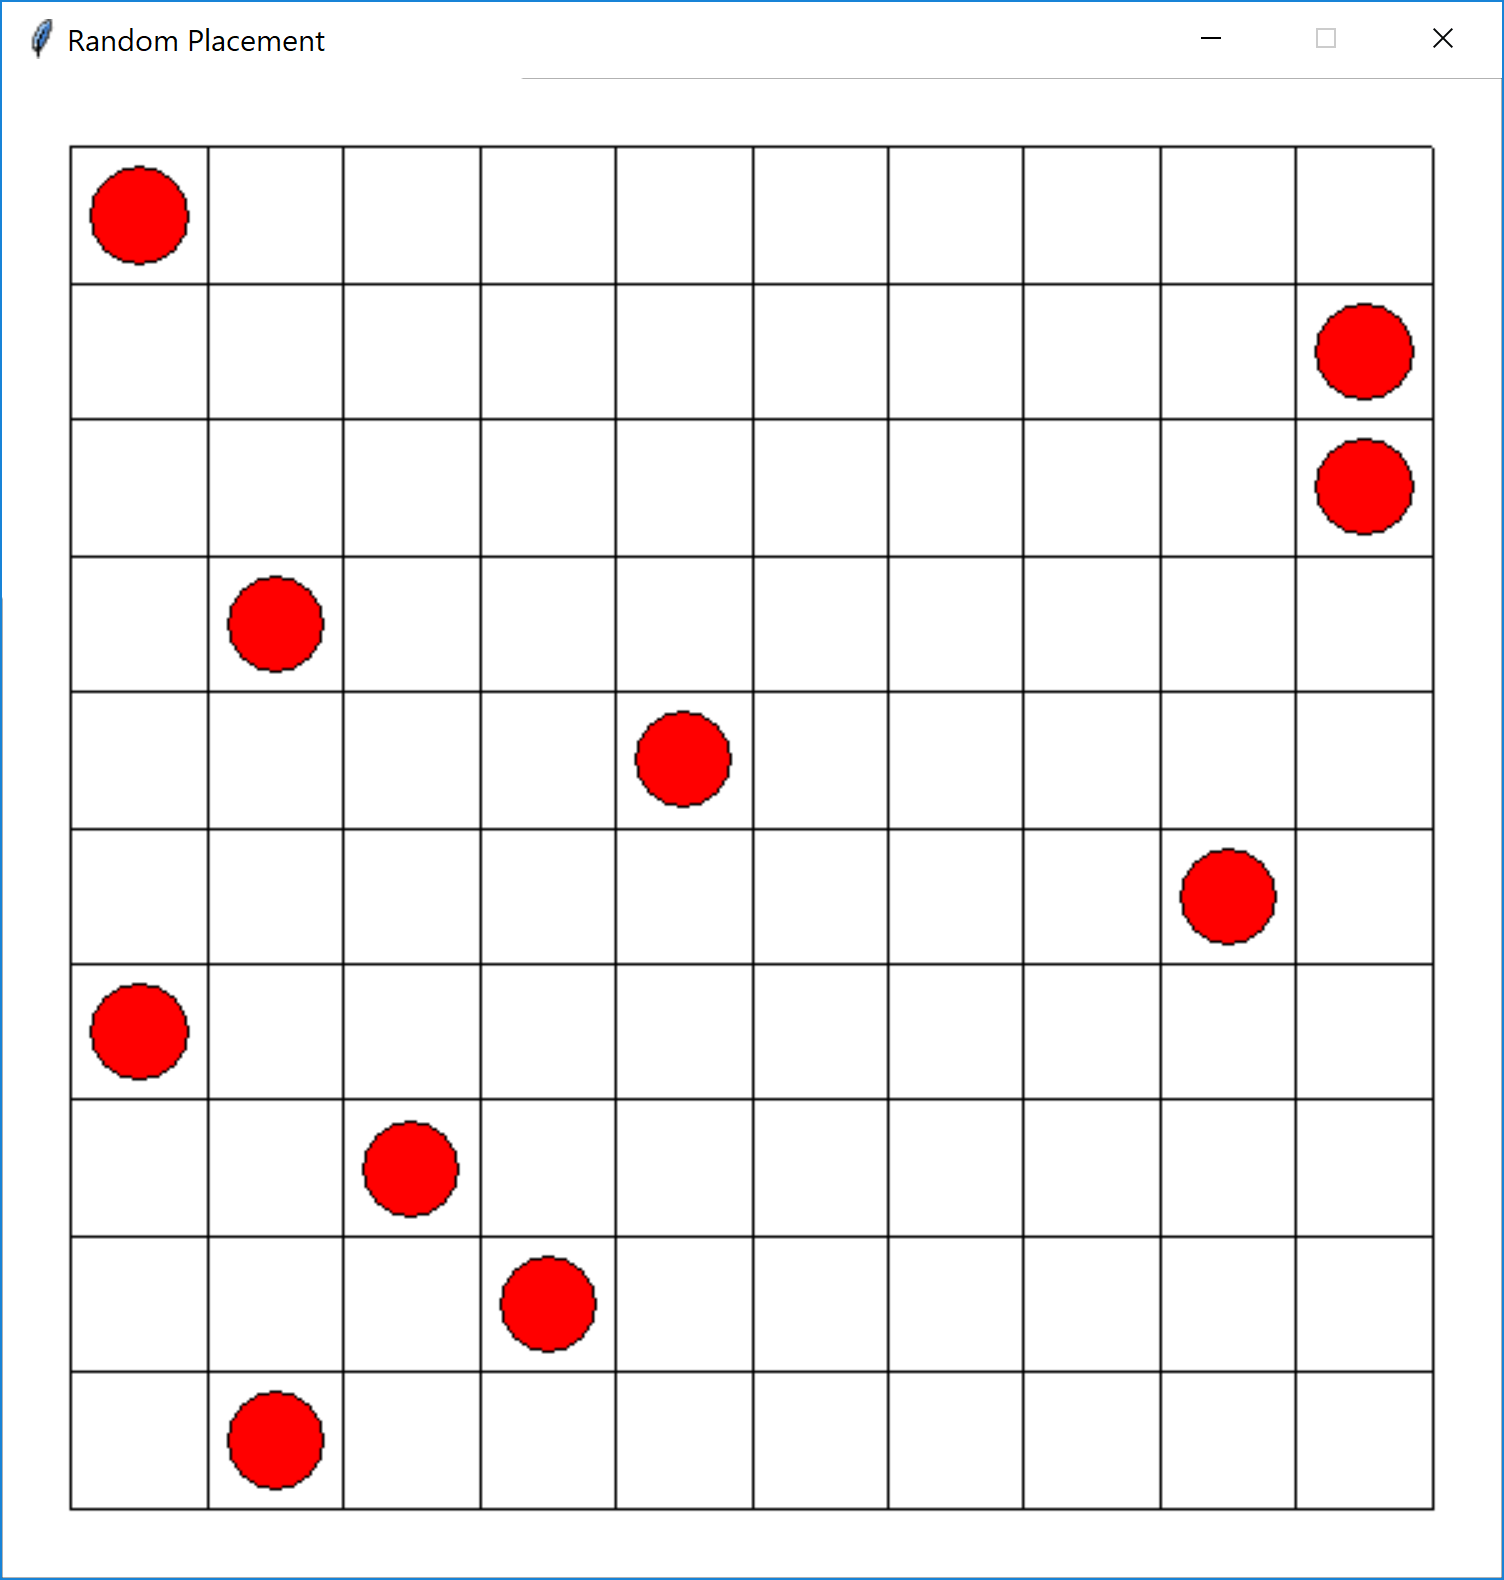 <image: randomly placing checkers pieces>